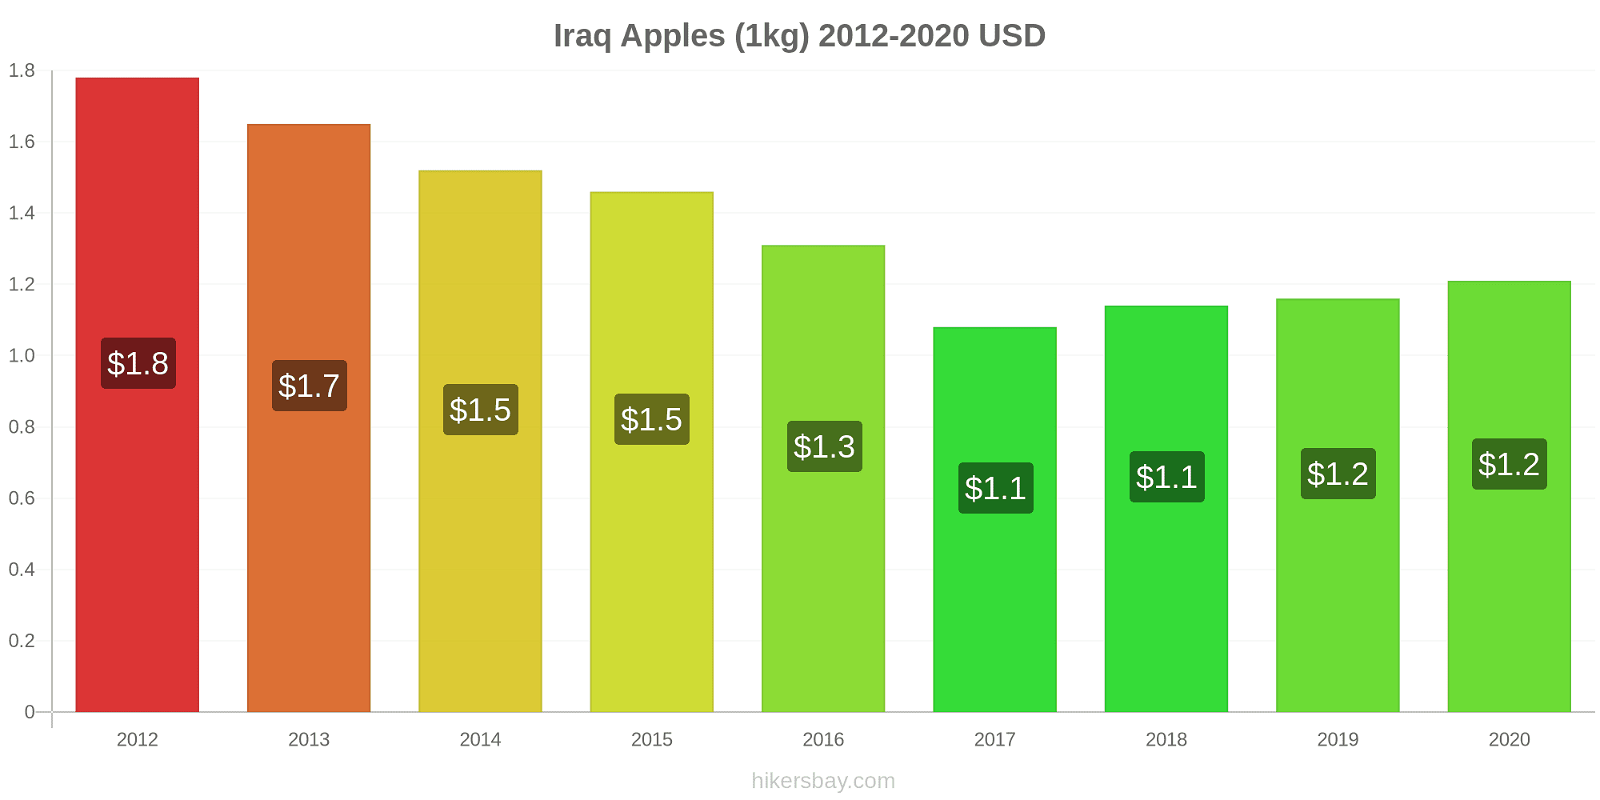 Iraq price changes Apples (1kg) hikersbay.com